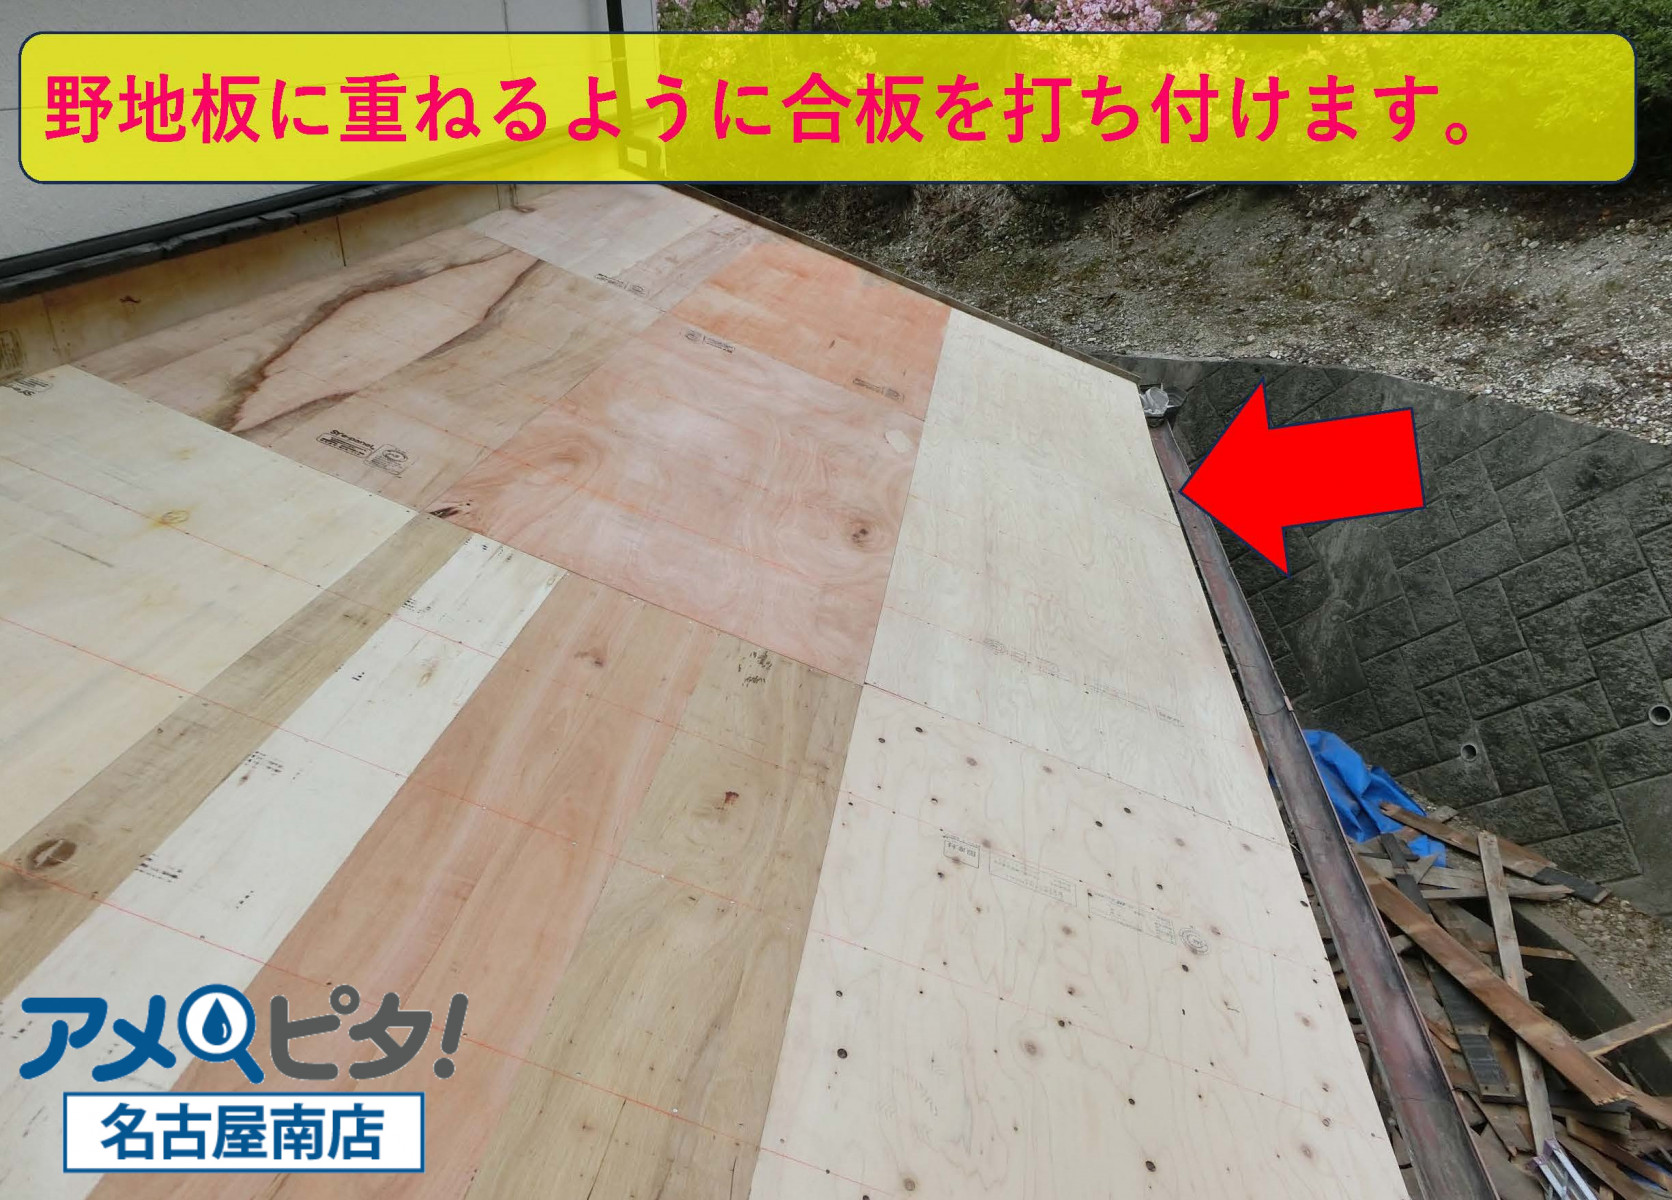 名古屋市緑区にて屋根をめくって新たに合板で補強した所で屋根瓦を取り付けます